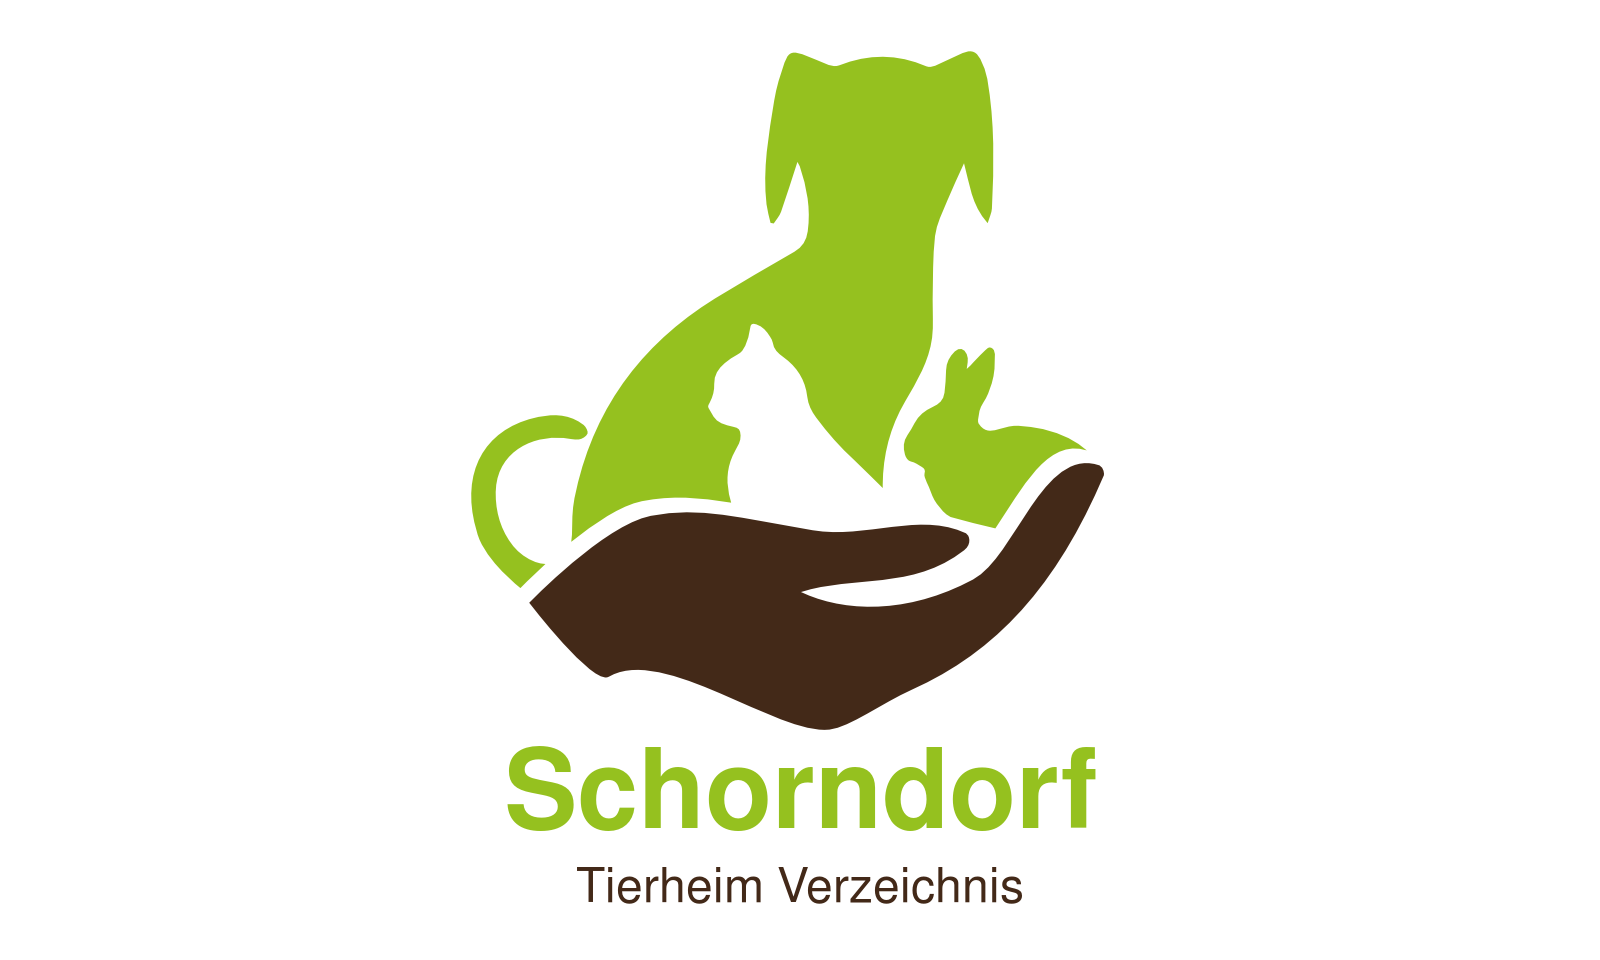 Tierheim Schorndorf